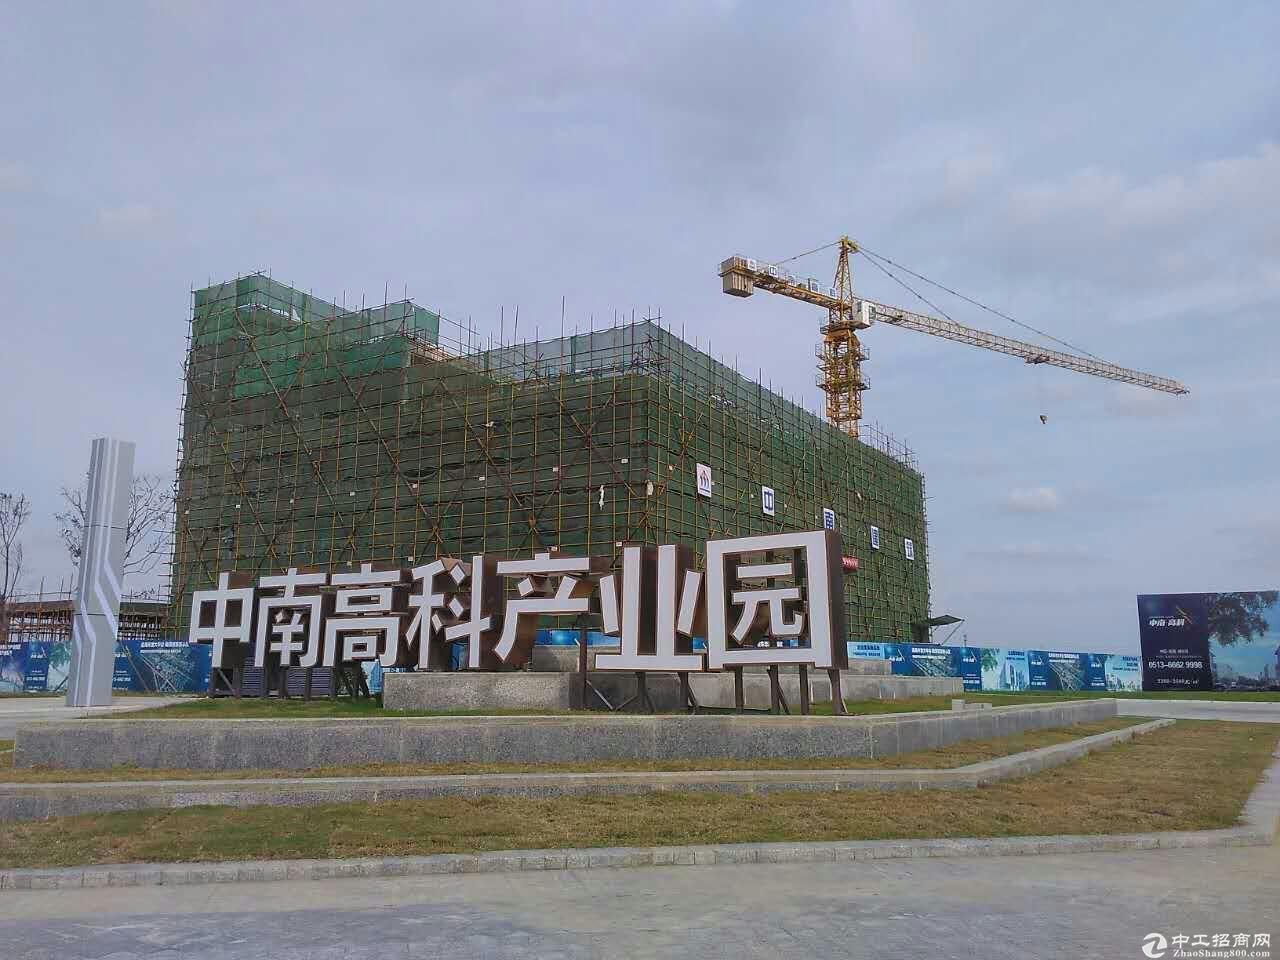 杭州 练杭高速新安入口旁 标准厂房 800㎡-4500㎡ 出售 独立产权 可按揭